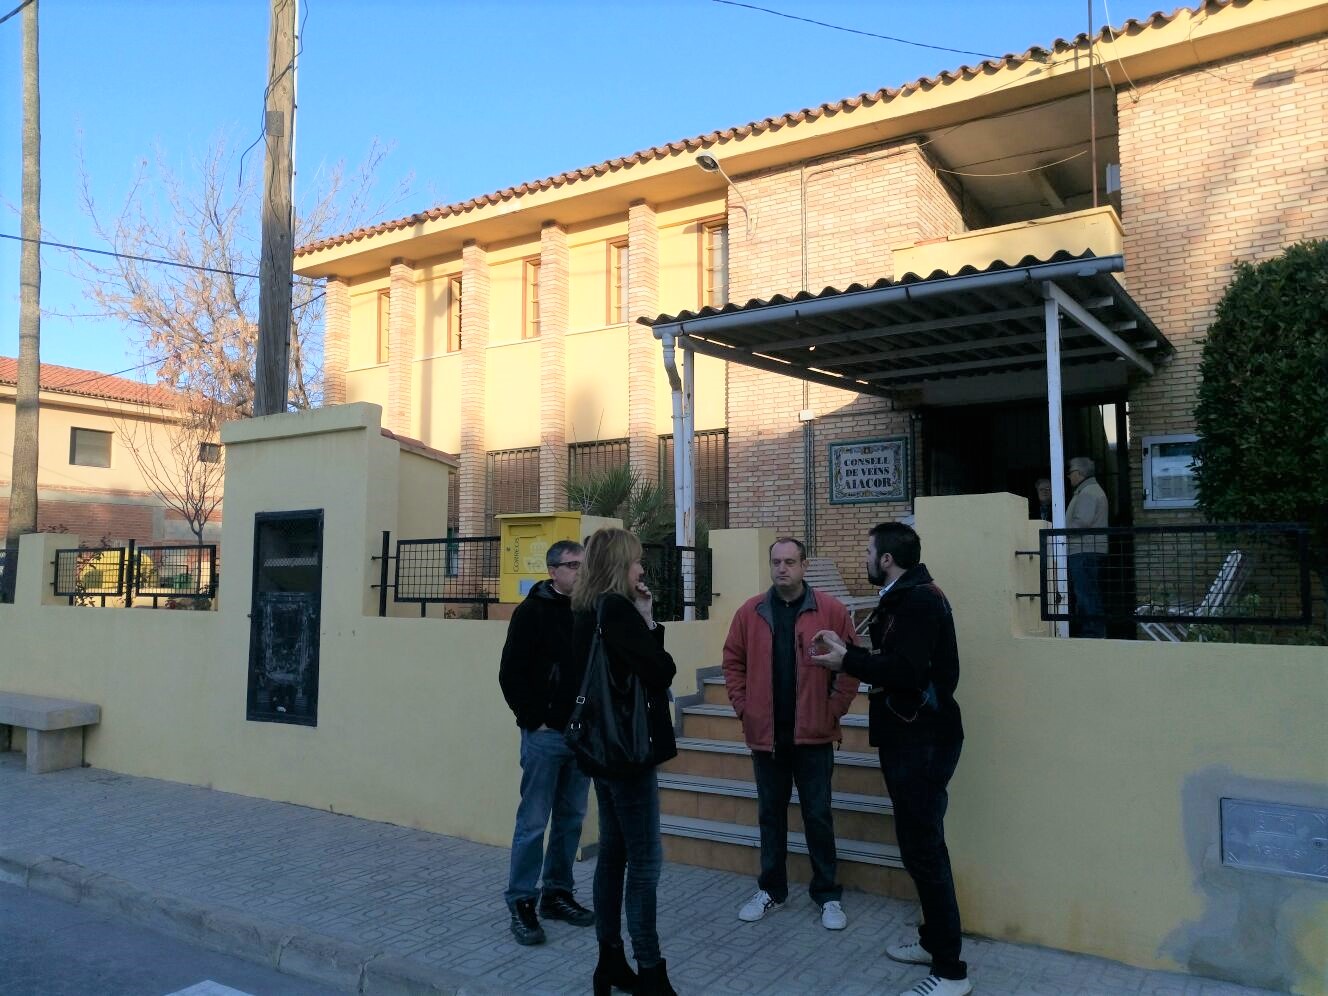 Representants municipals visiten el Centre Social d'Aiacor per a tractar les immediates obres